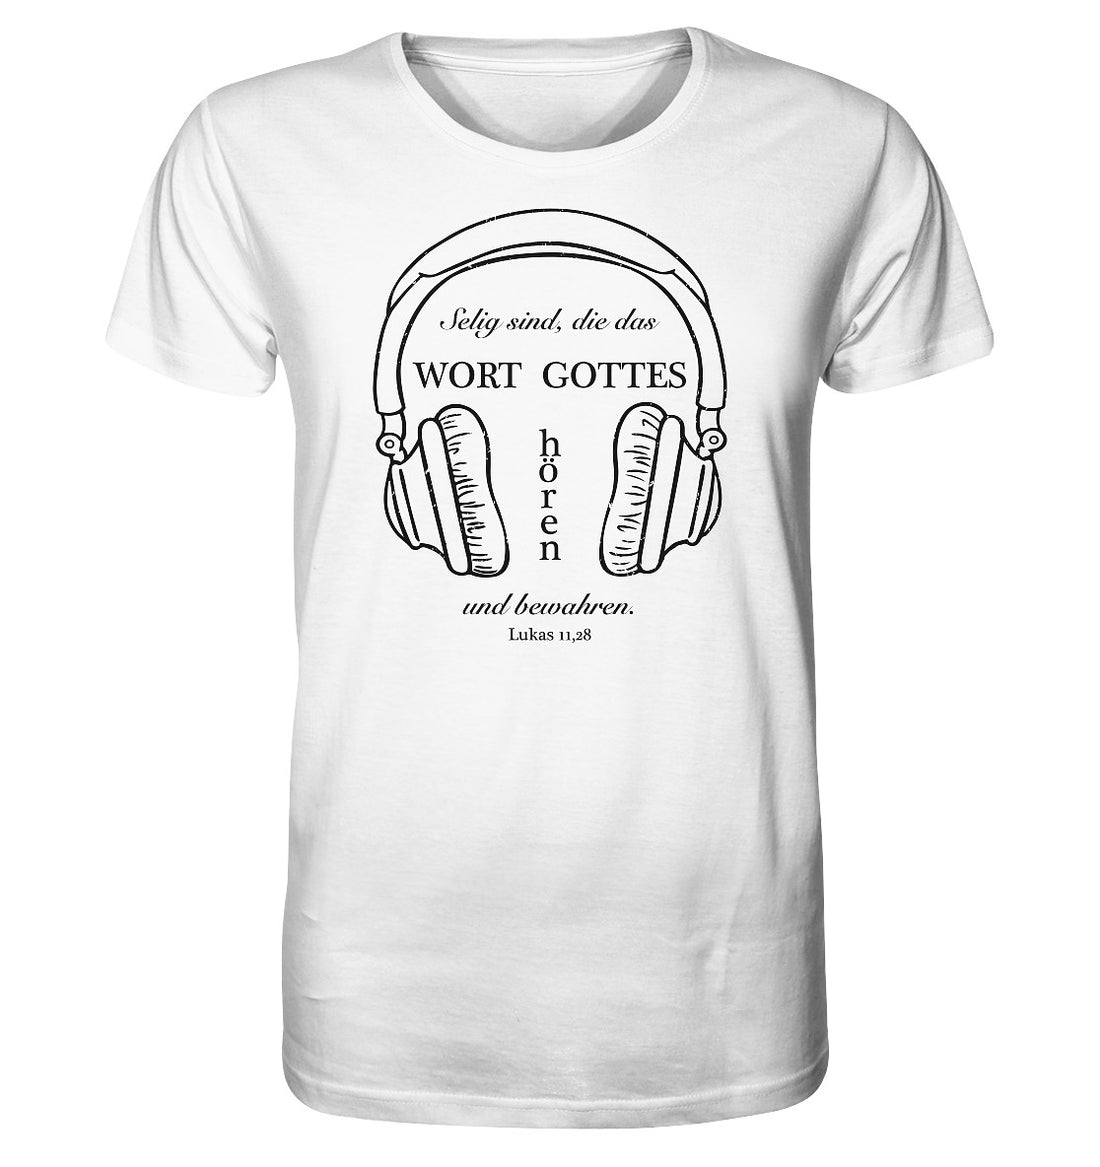 Lk 11,28 - Wort Gottes hören - Organic Shirt